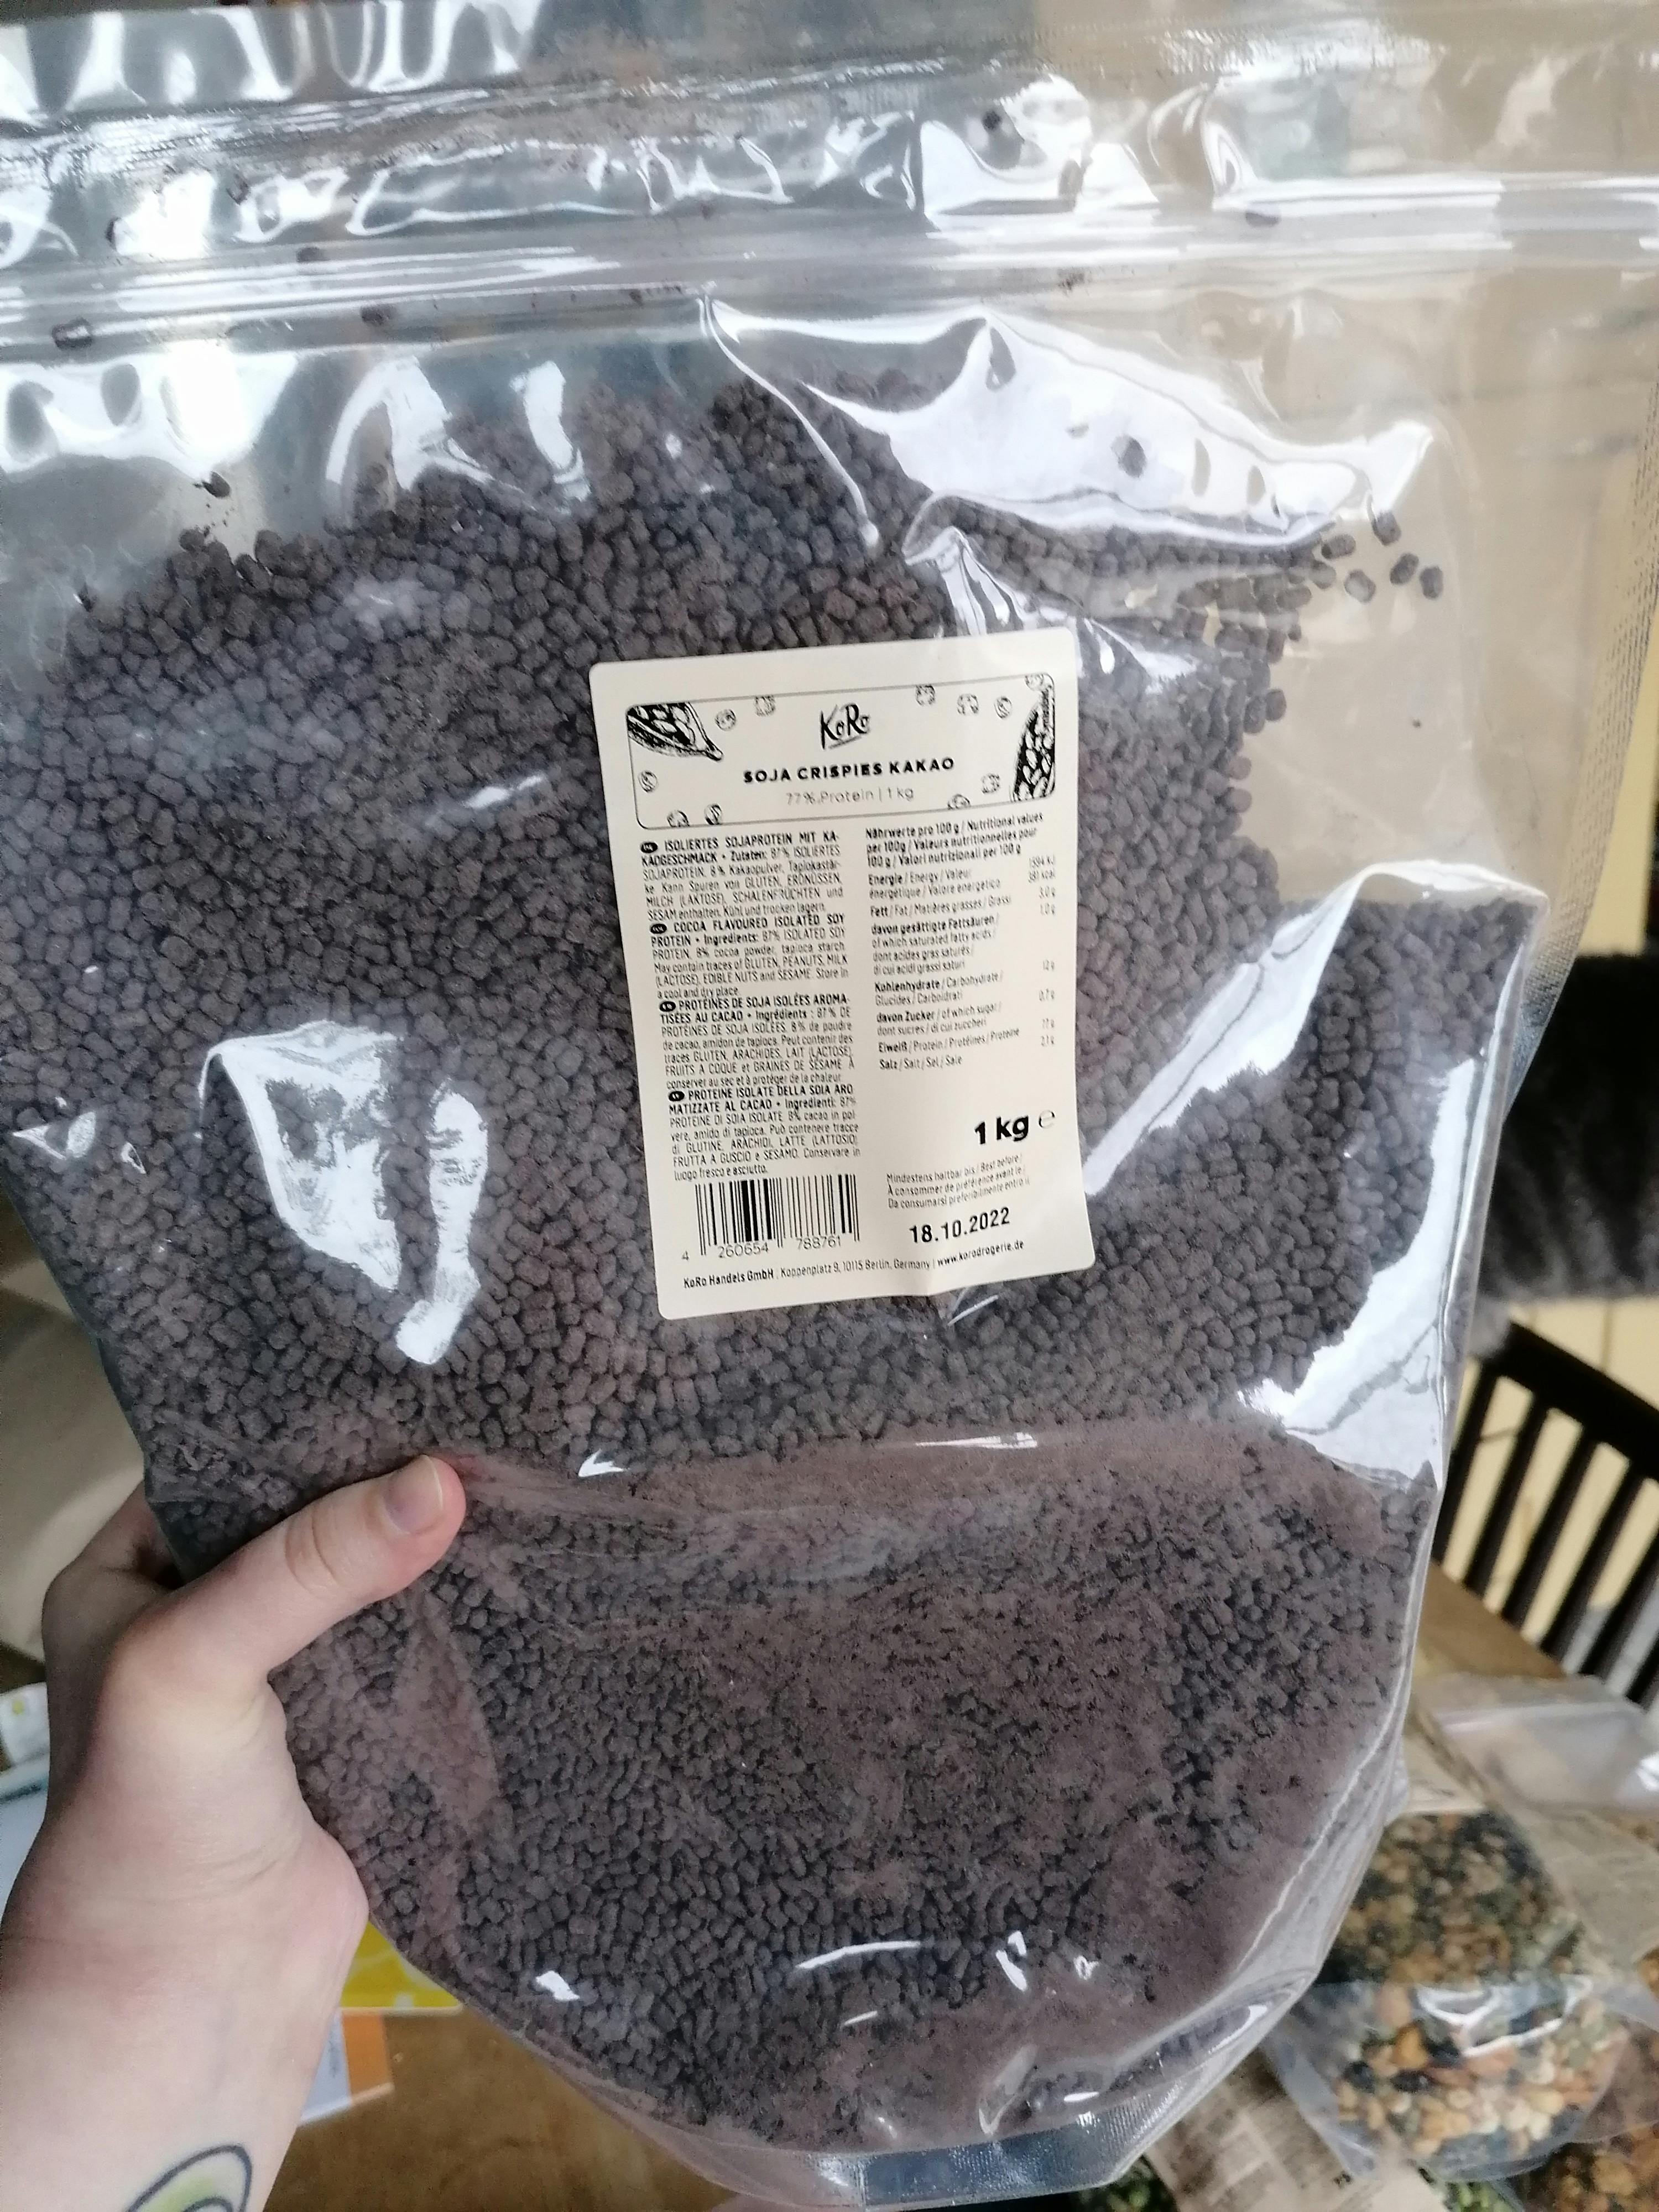 KoRo Crispies aux protéines de soja (77% de protéines) 1 kg